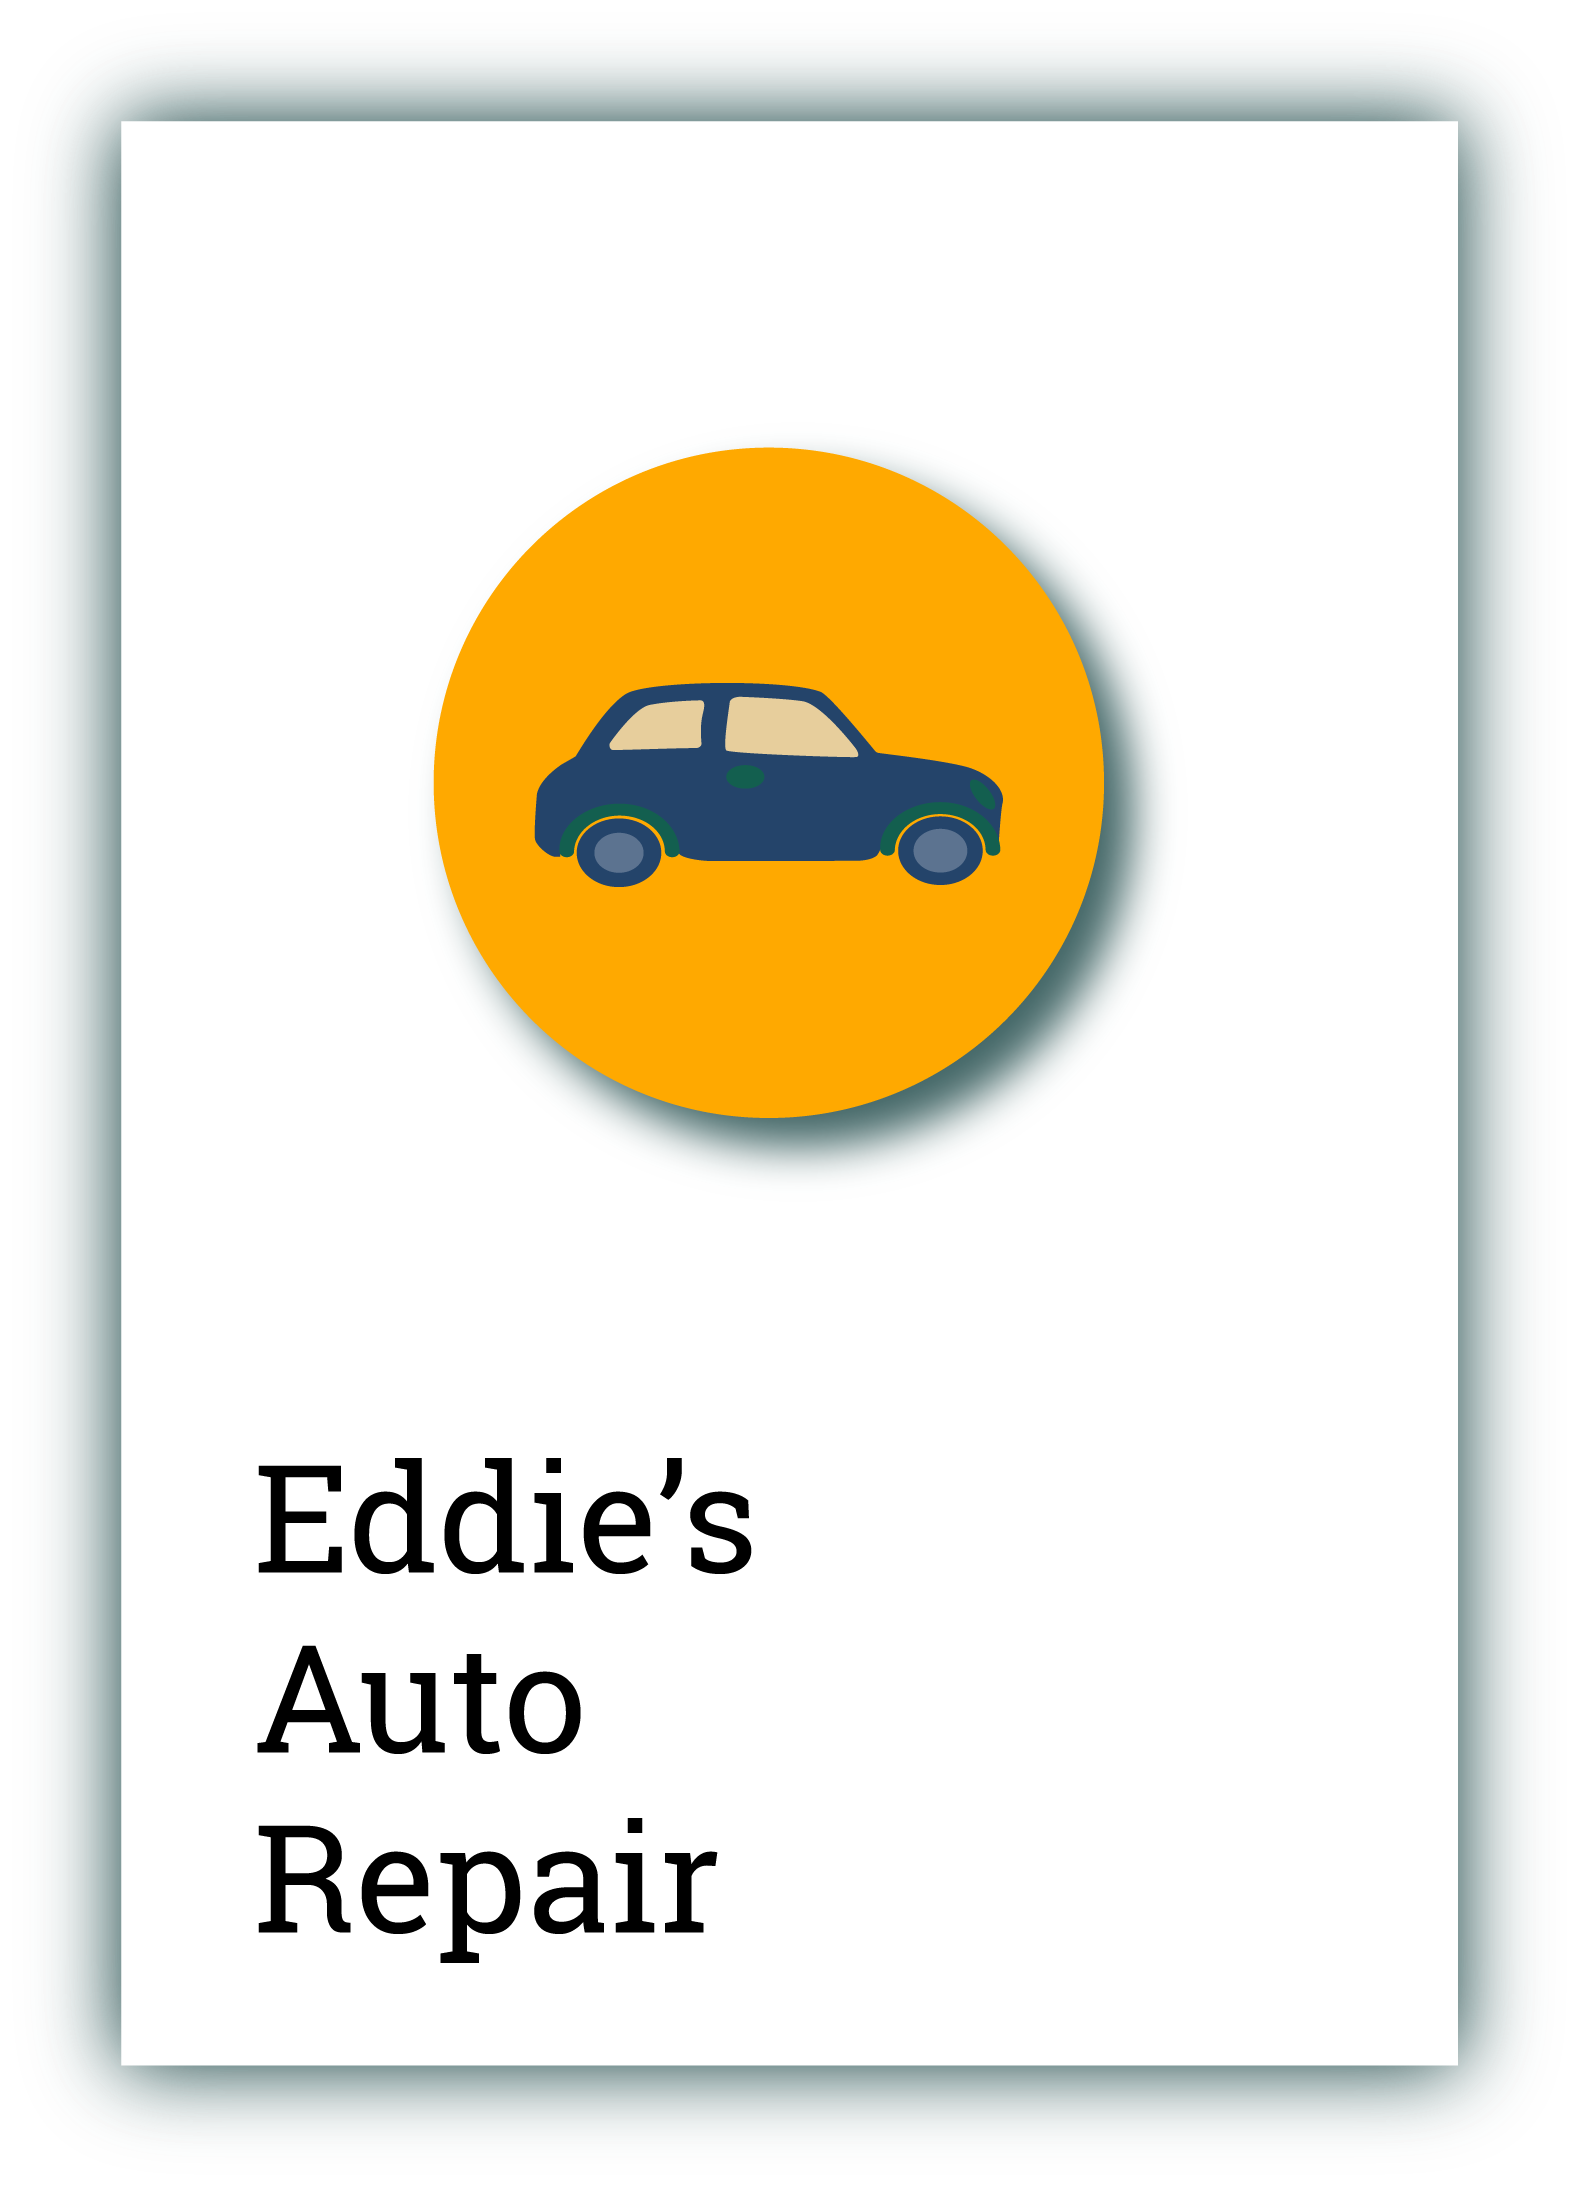 Eddie's Auto Repair